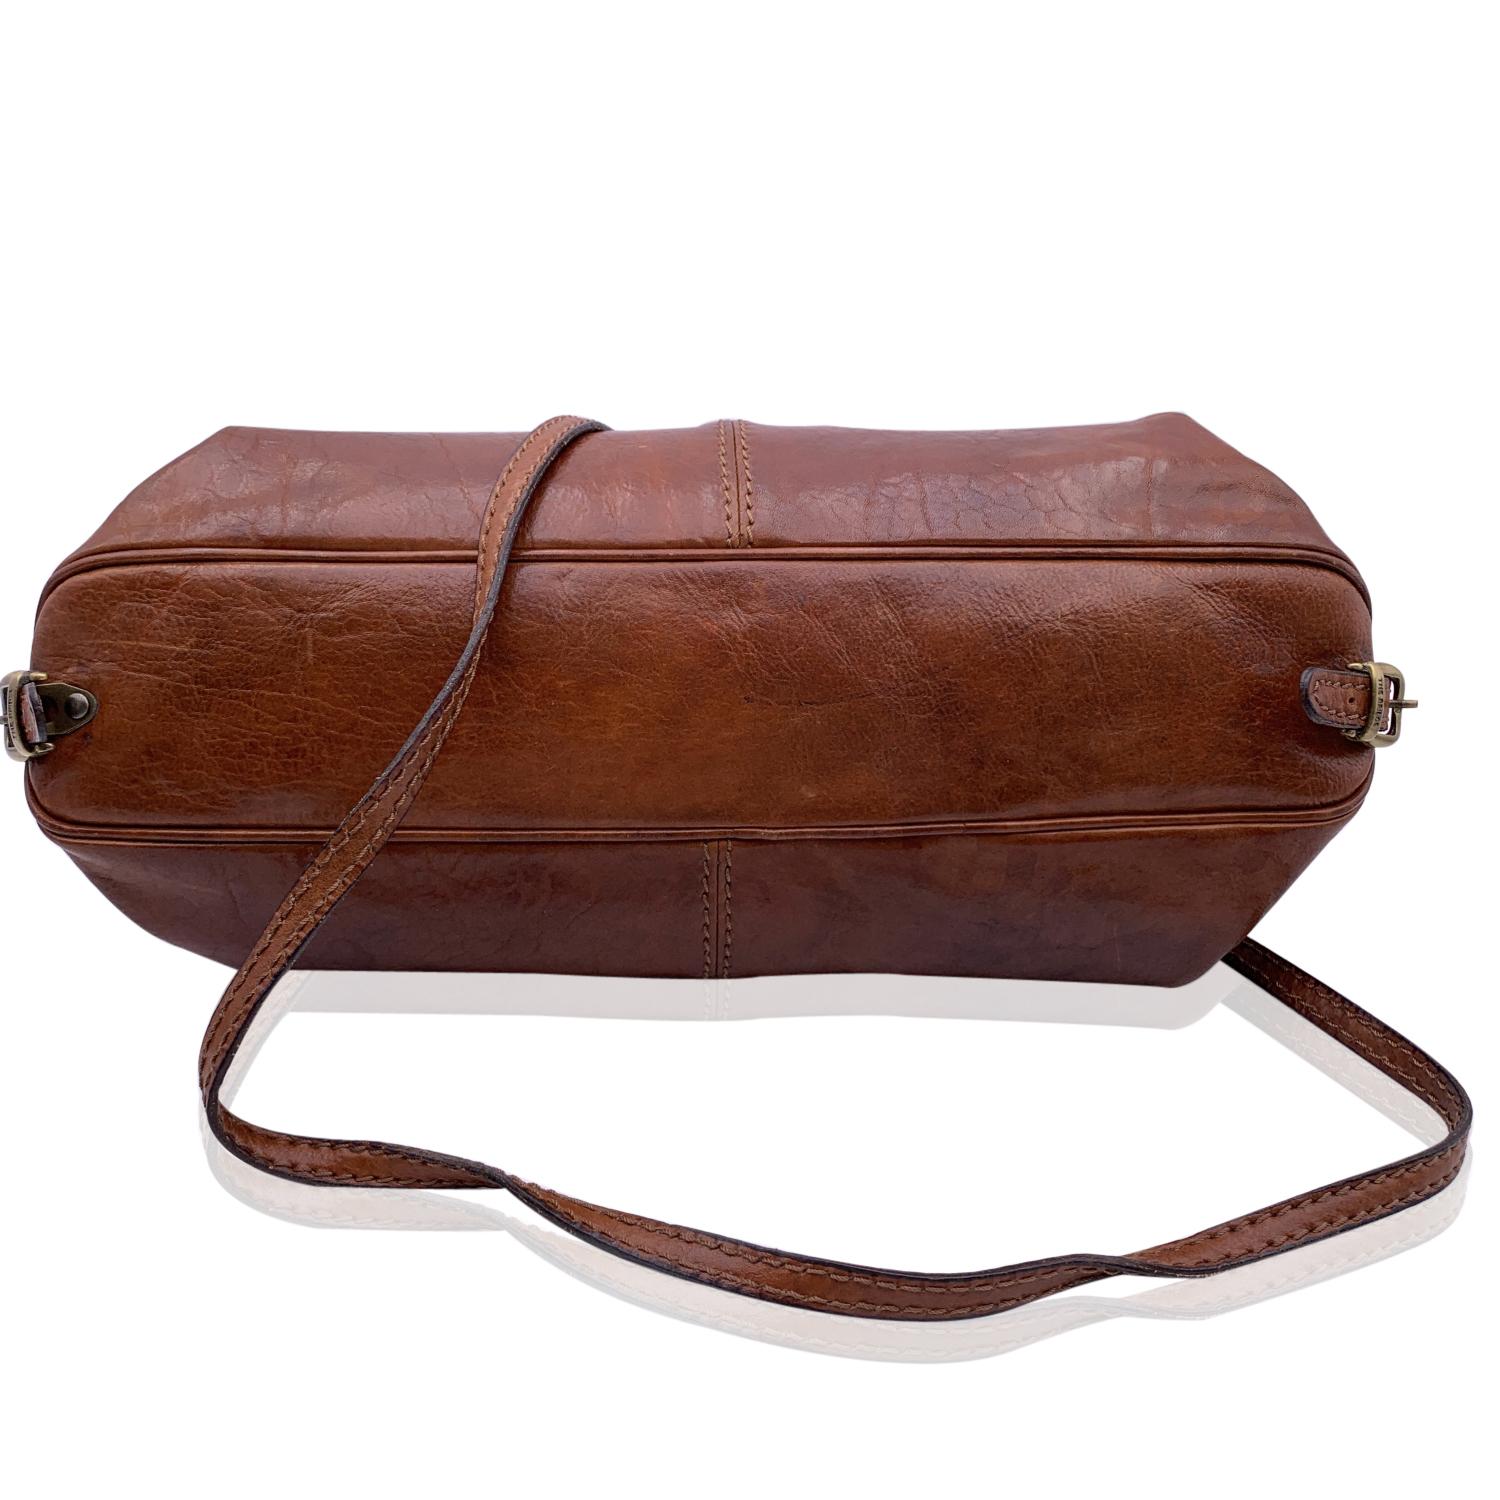 The Bridge Vintage Brown Leather Doctor Bag Satchel Handbag with Strap 1